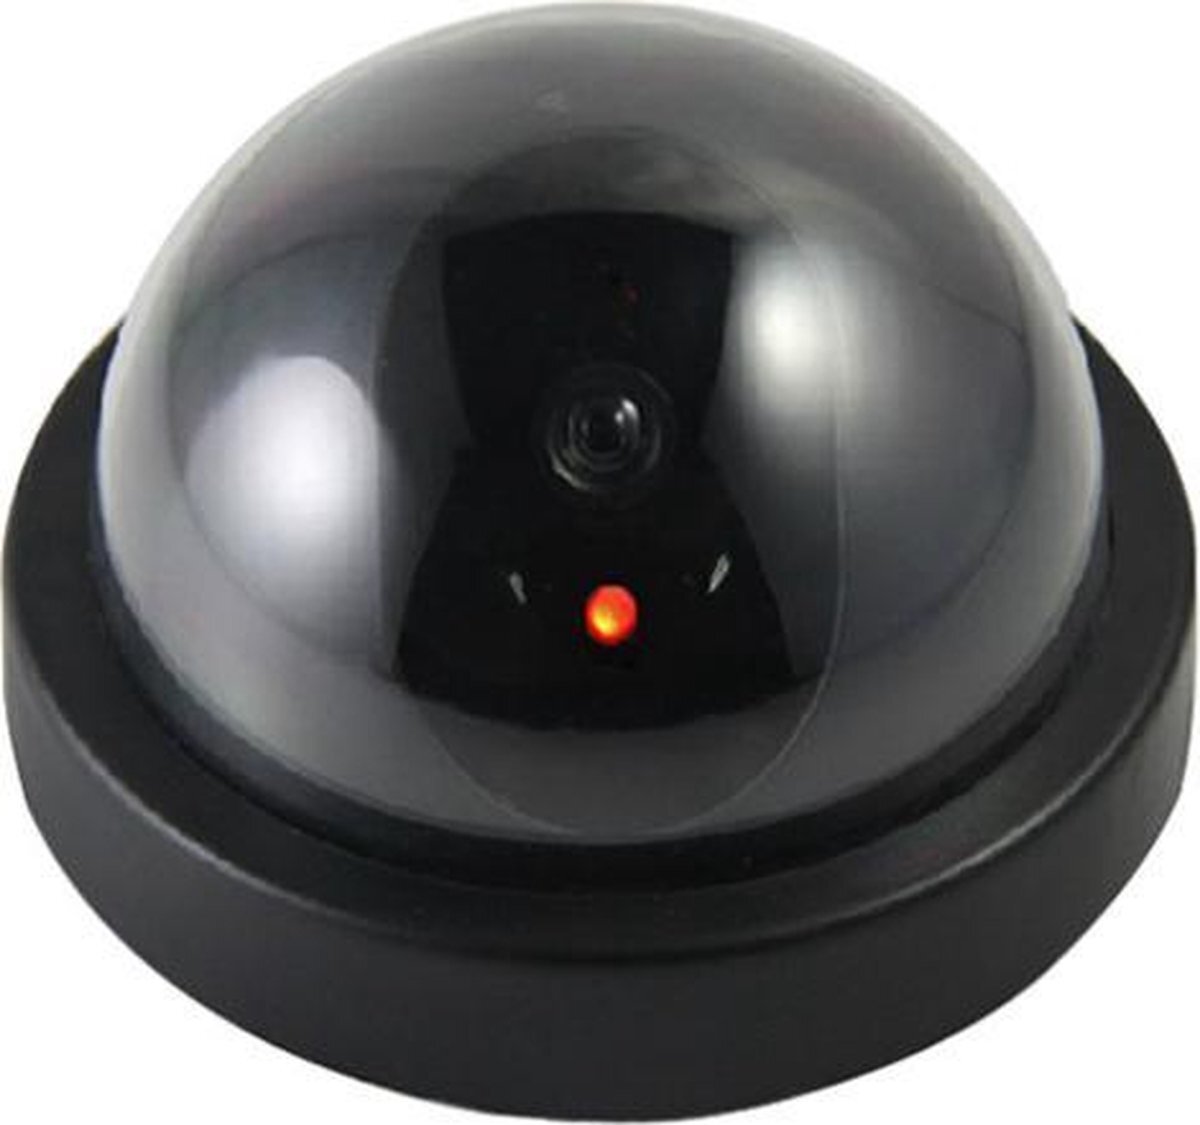 Neview Dummy camera - Zwart - Beveiligingscamera met LED indicator - Voor binnen en buitengebruik - Nep camera professioneel zwart